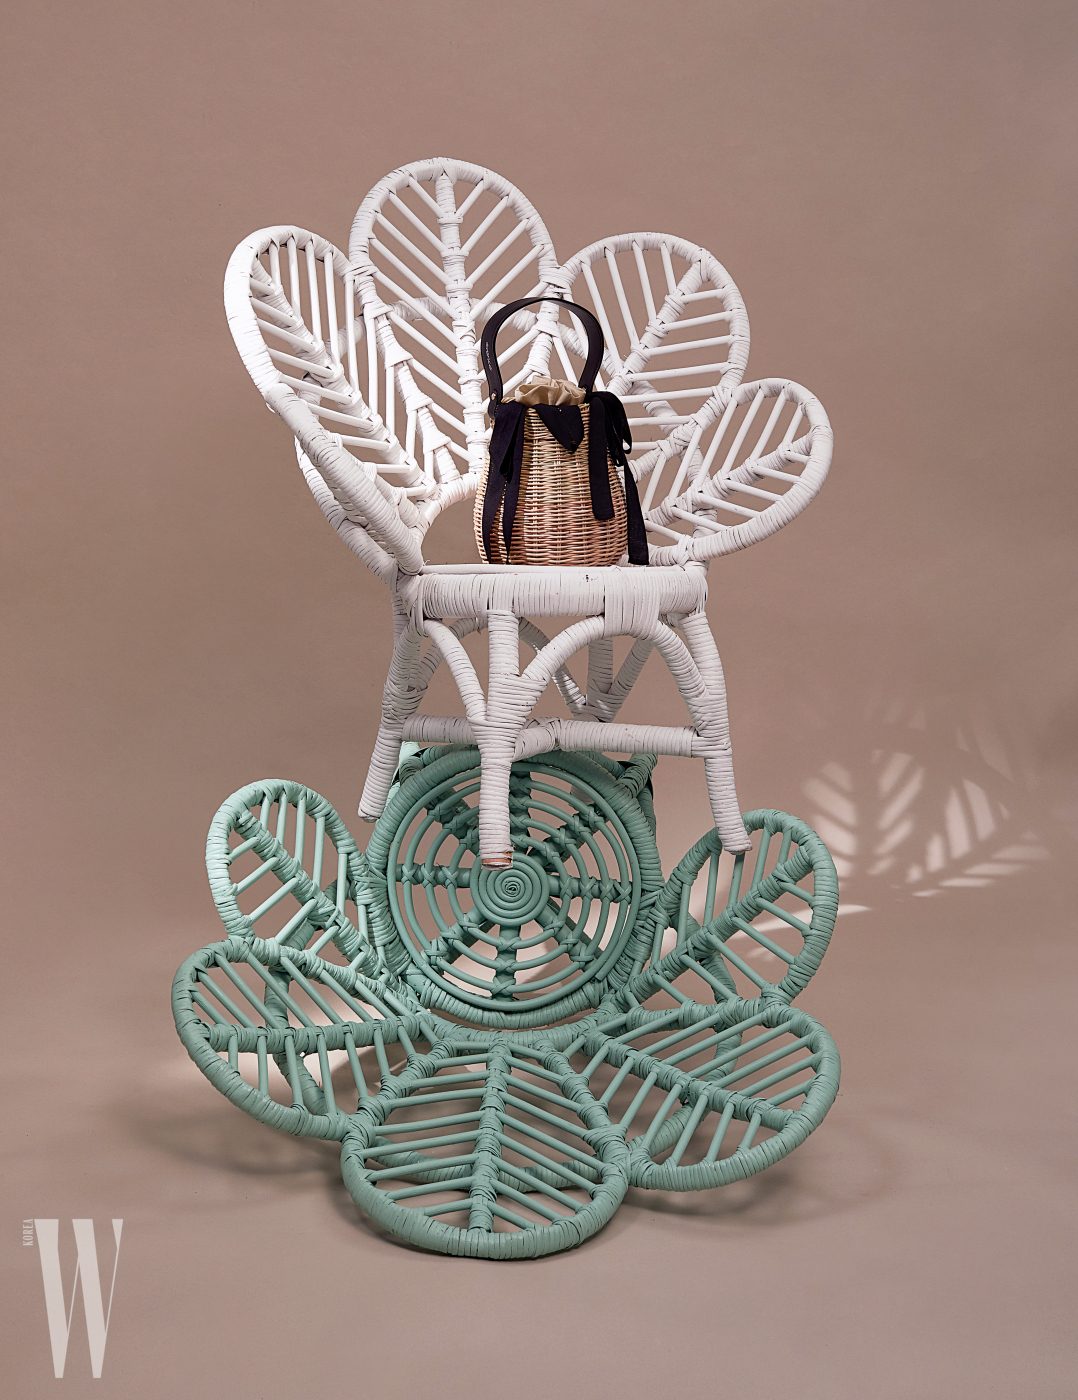 로맨틱한프렌치무드의바구니가방은에반스제품. 8만5천원. 의자는모두소프트퍼레이드제품. 가격미정.